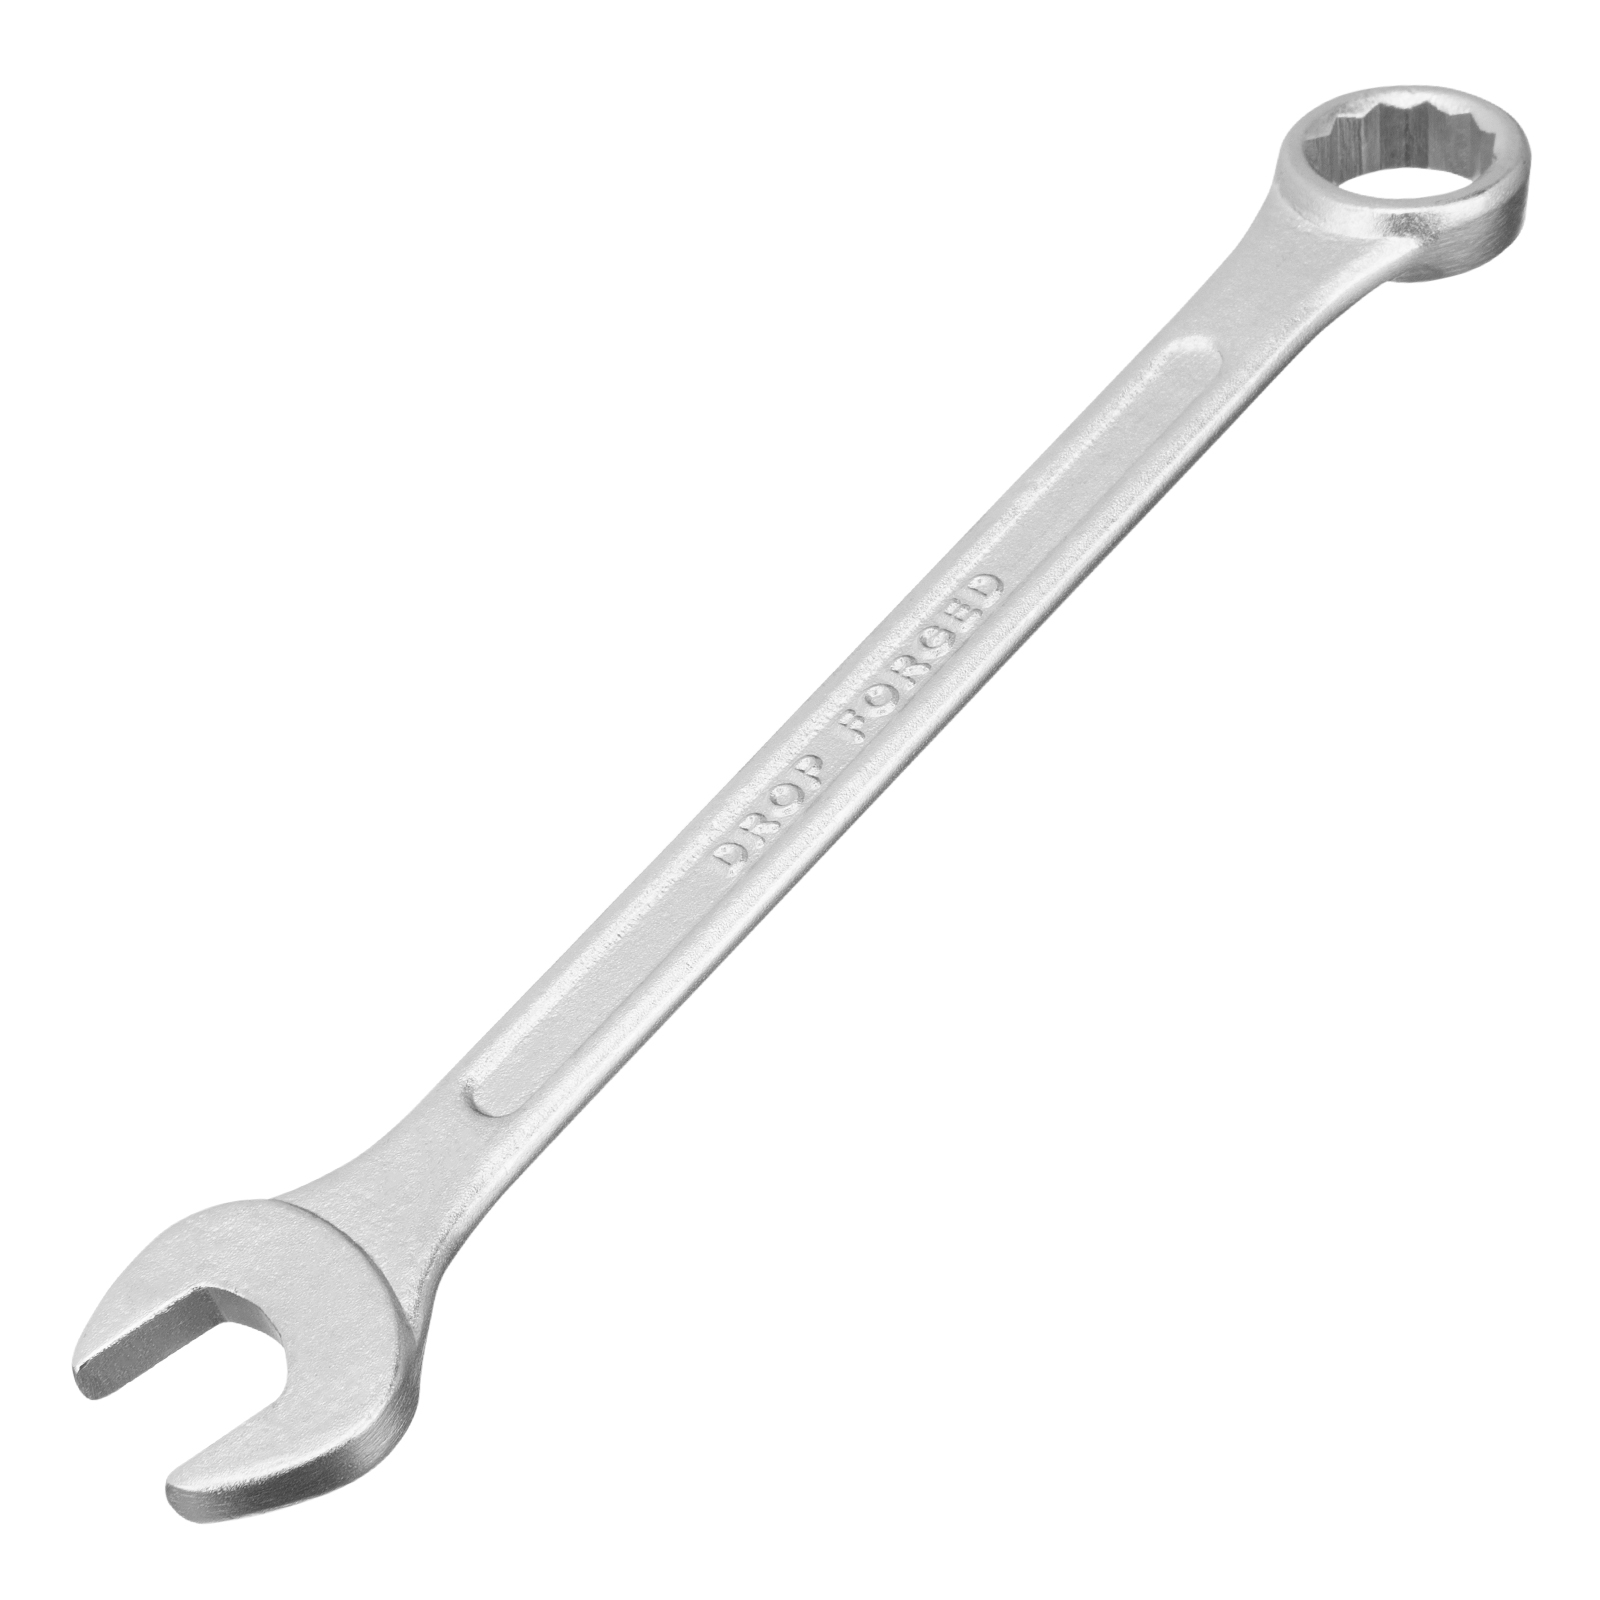 Комбинированный ключ SPARTA 150445 ключ комбинированный sparta 150445 17 мм